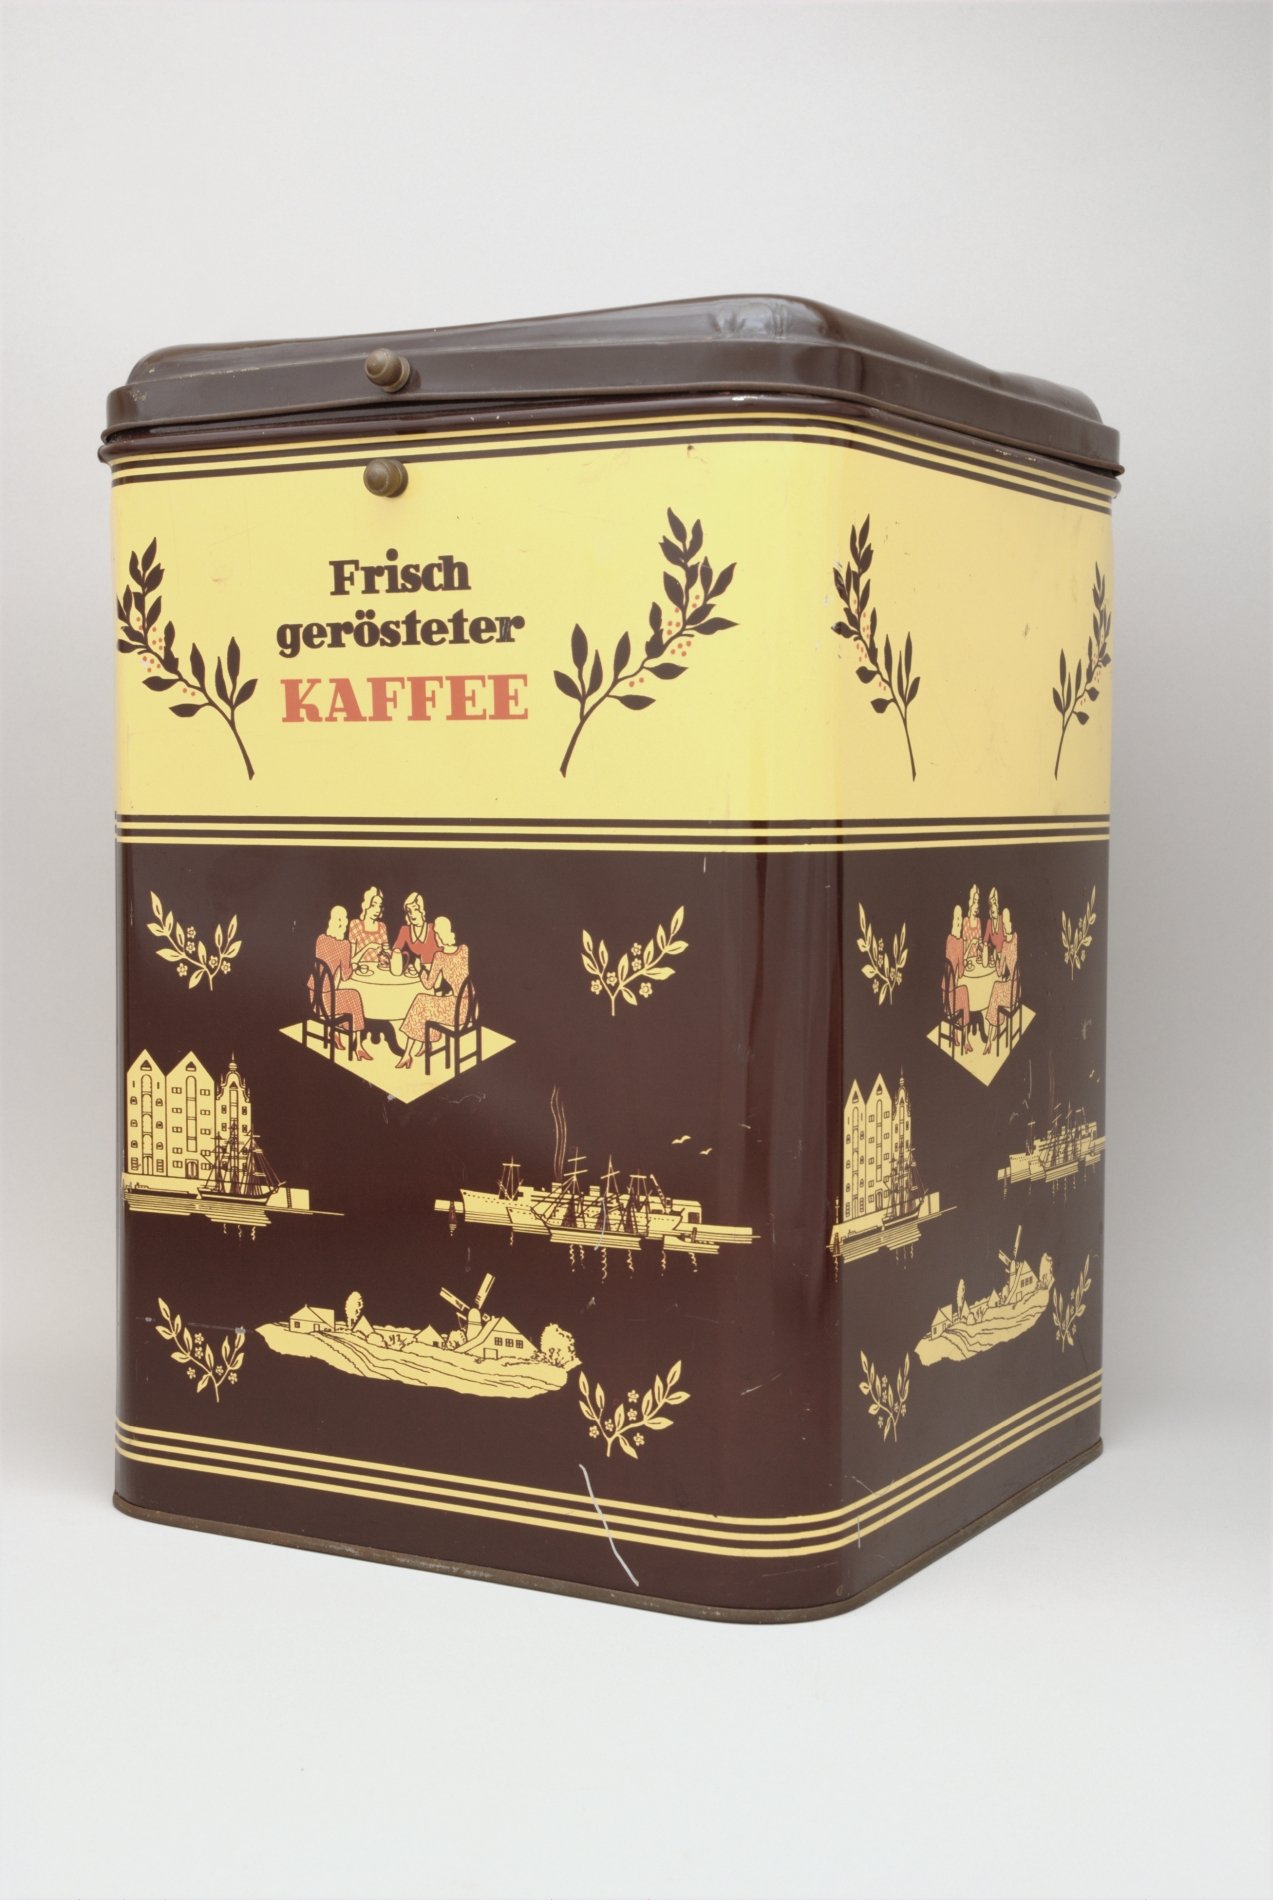 Großer Vorratsbehälter für gerösteten Kaffee (Stiftung Domäne Dahlem - Landgut und Museum, Weiternutzung nur mit Genehmigung des Museums CC BY-NC-SA)